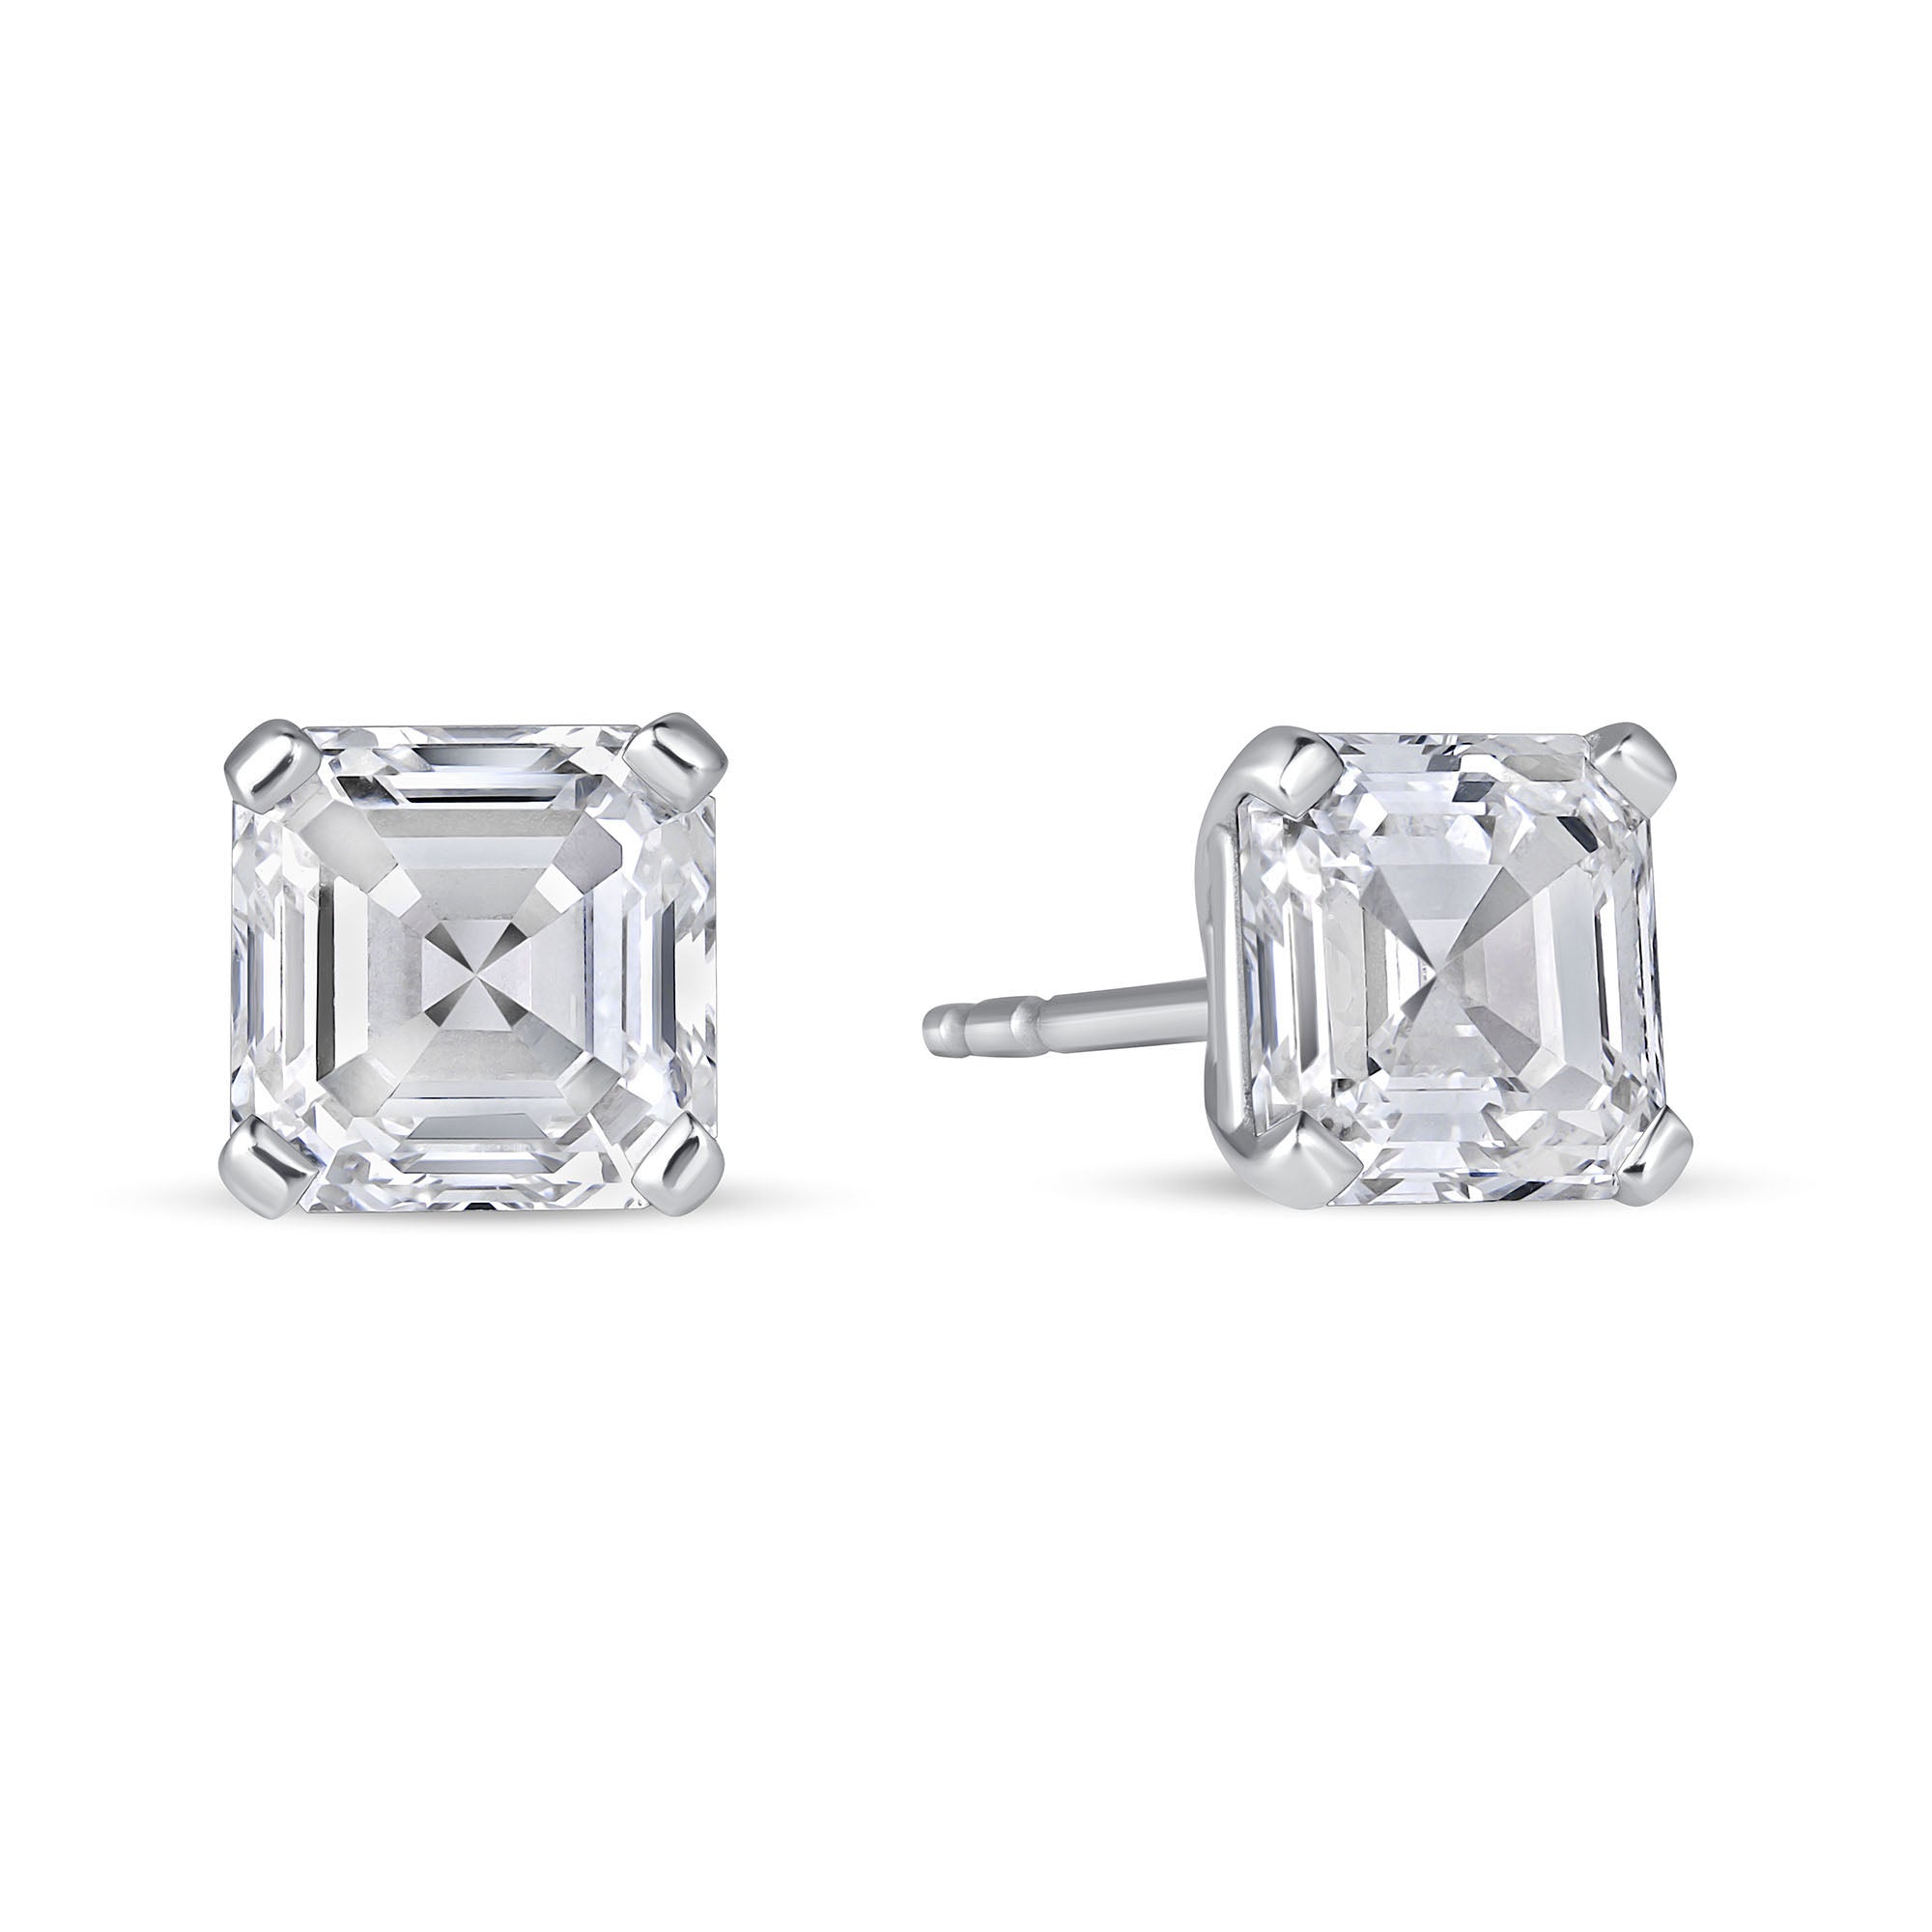 4 CT Asscher Cut Diamond Stud Earrings in Platinum